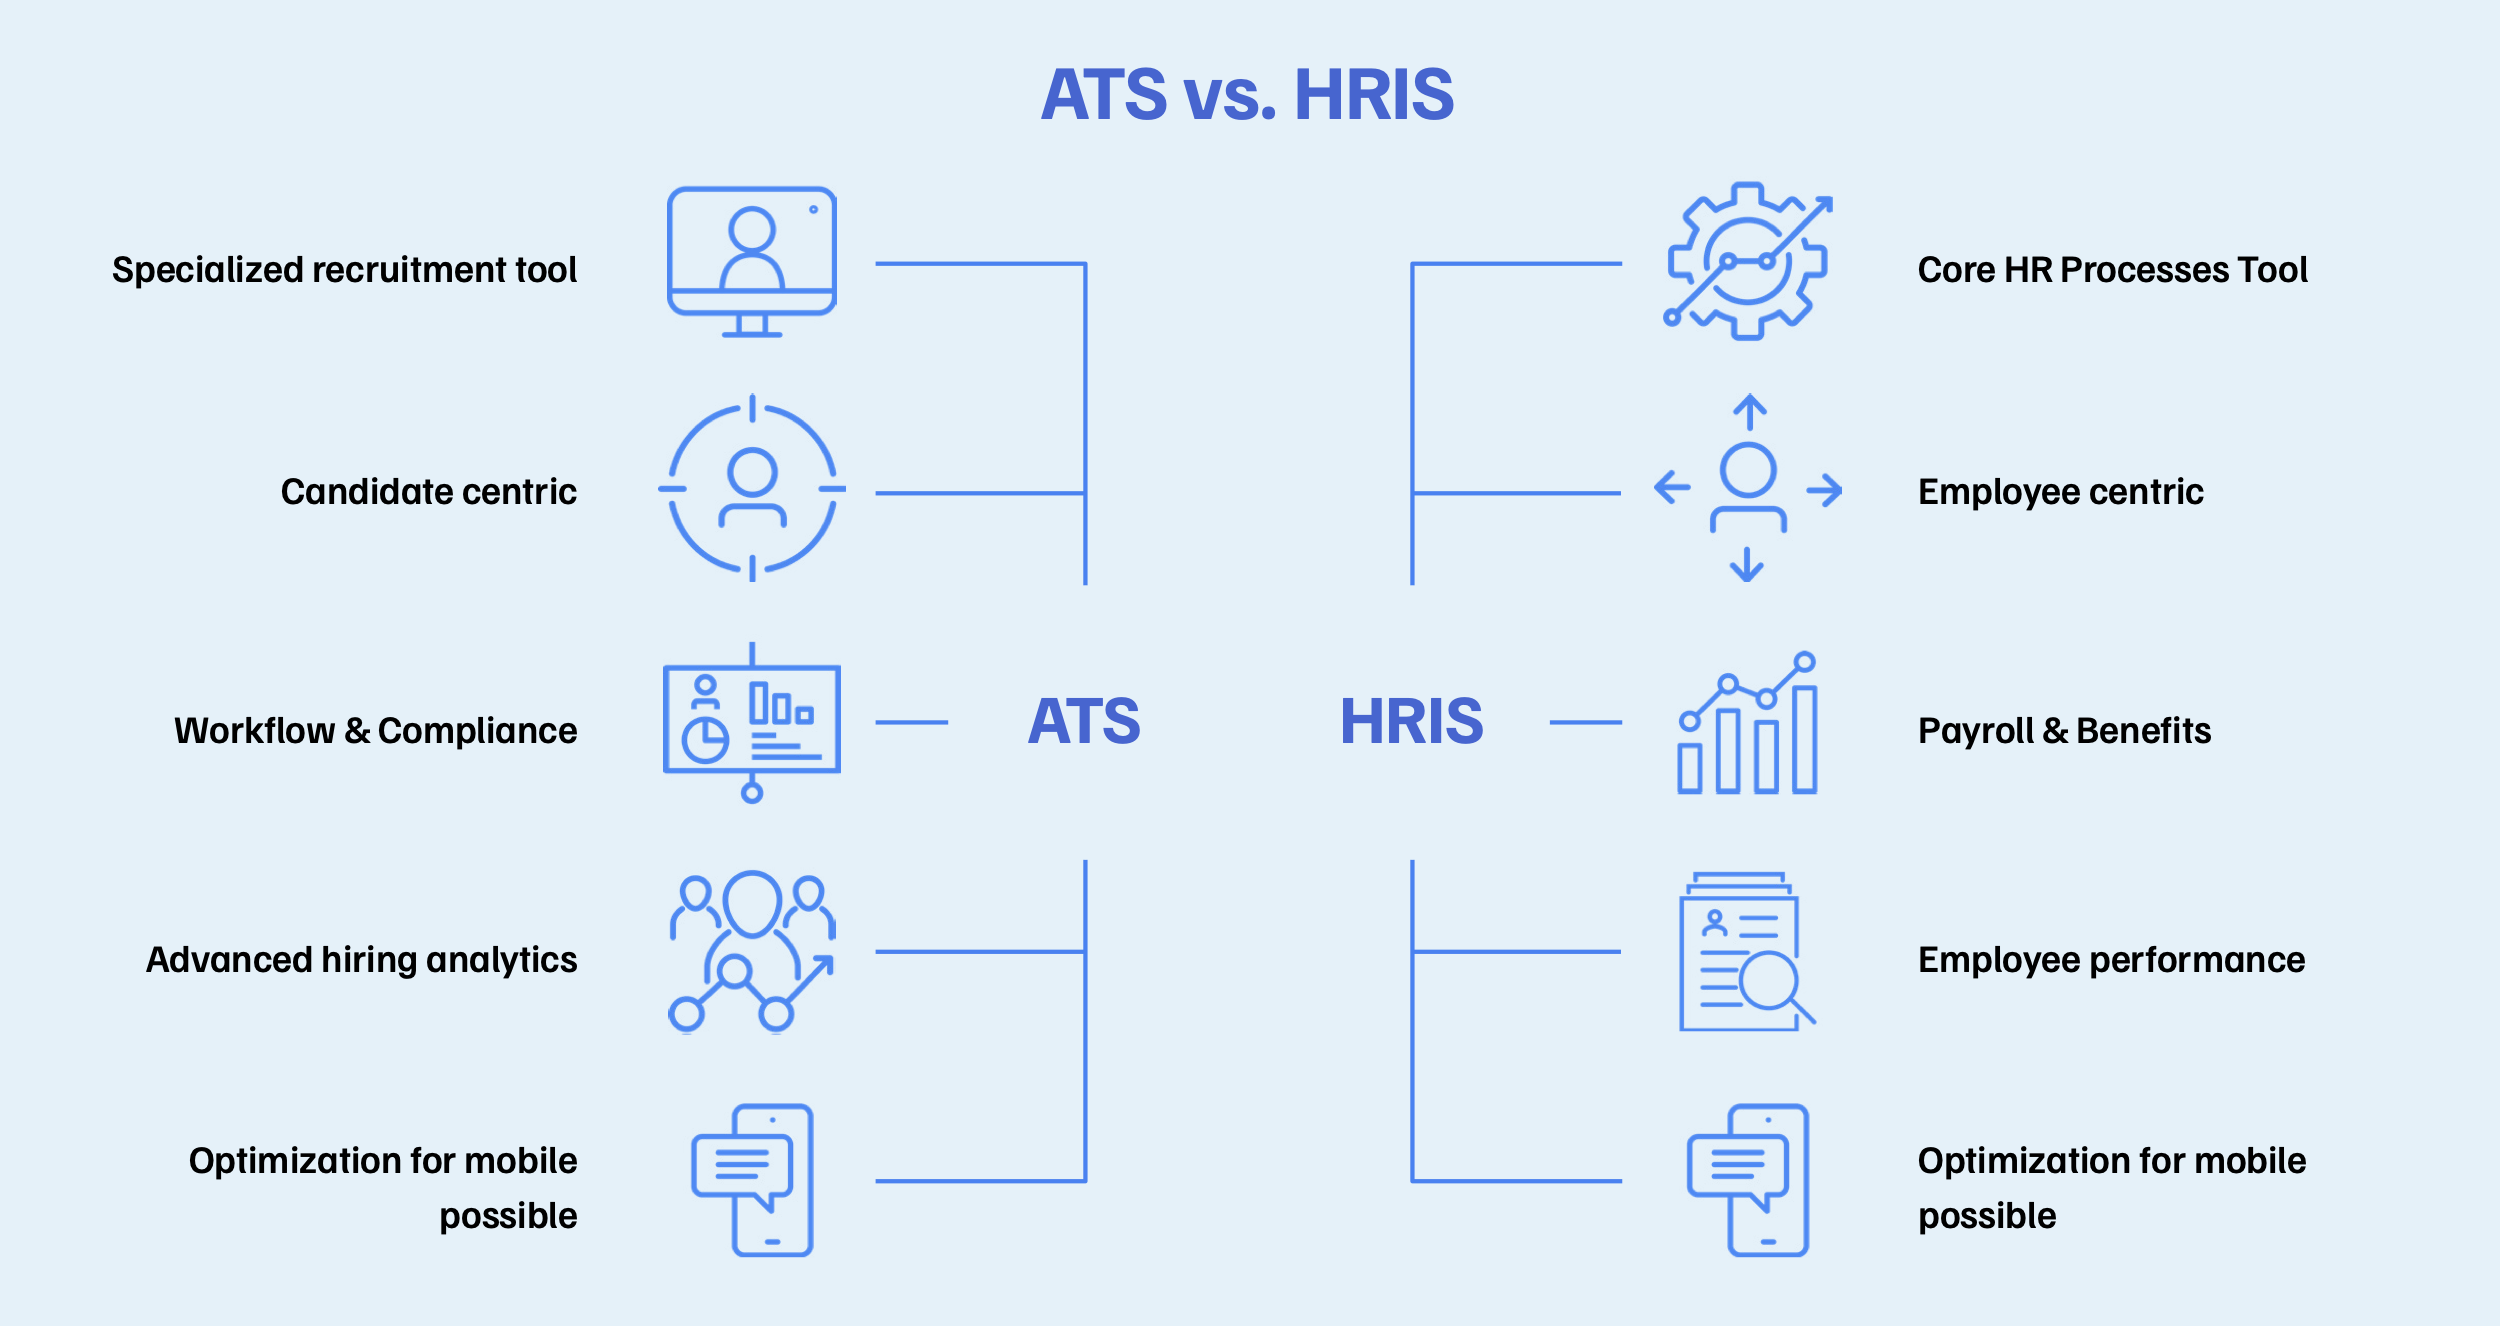 ATS versus HRIS